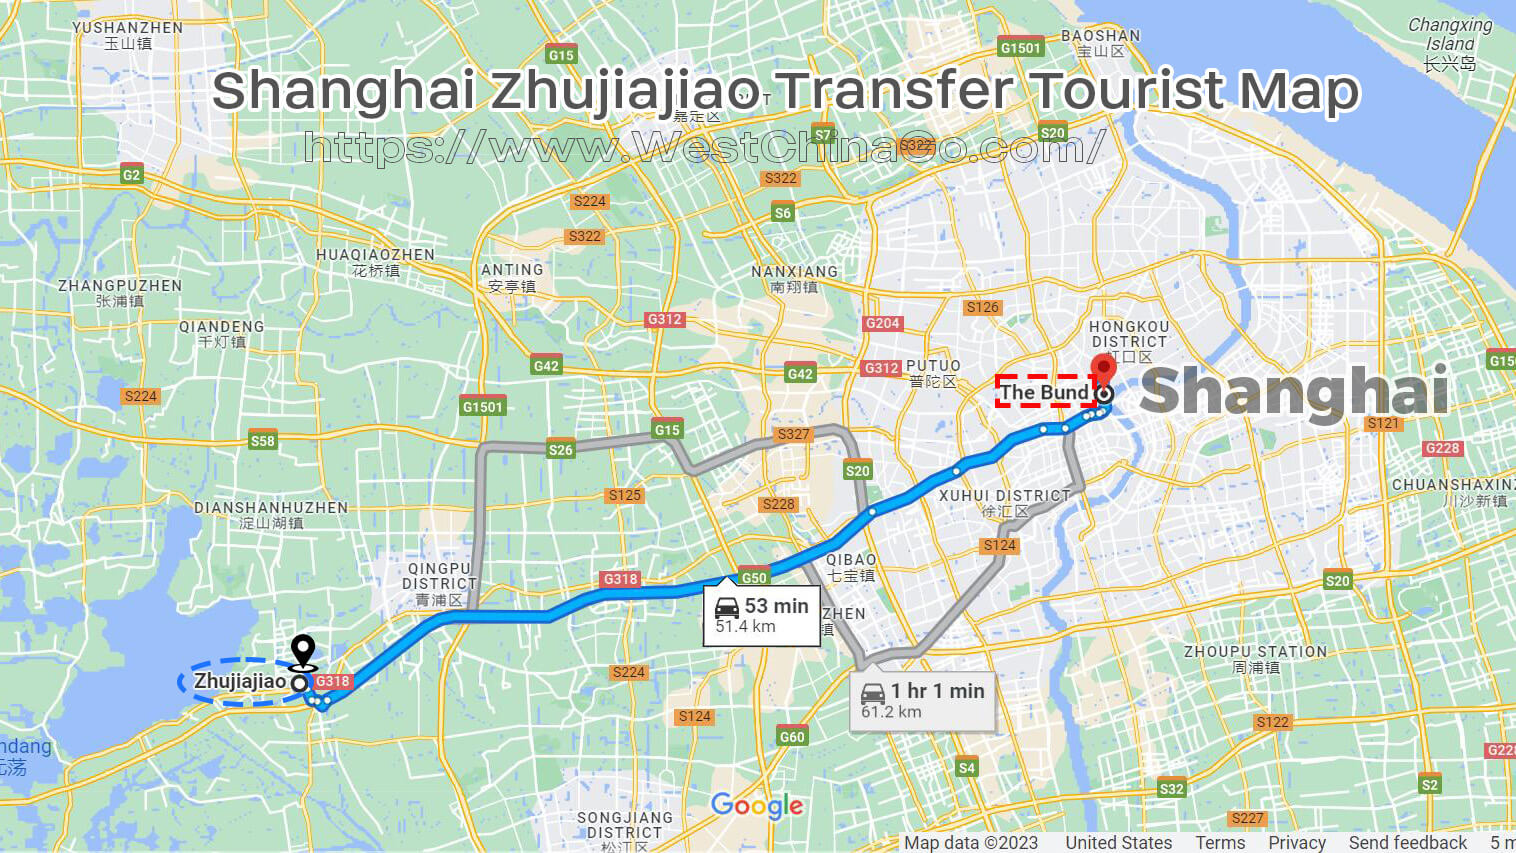 shanghai zhujiajiao water town transfer tourist map